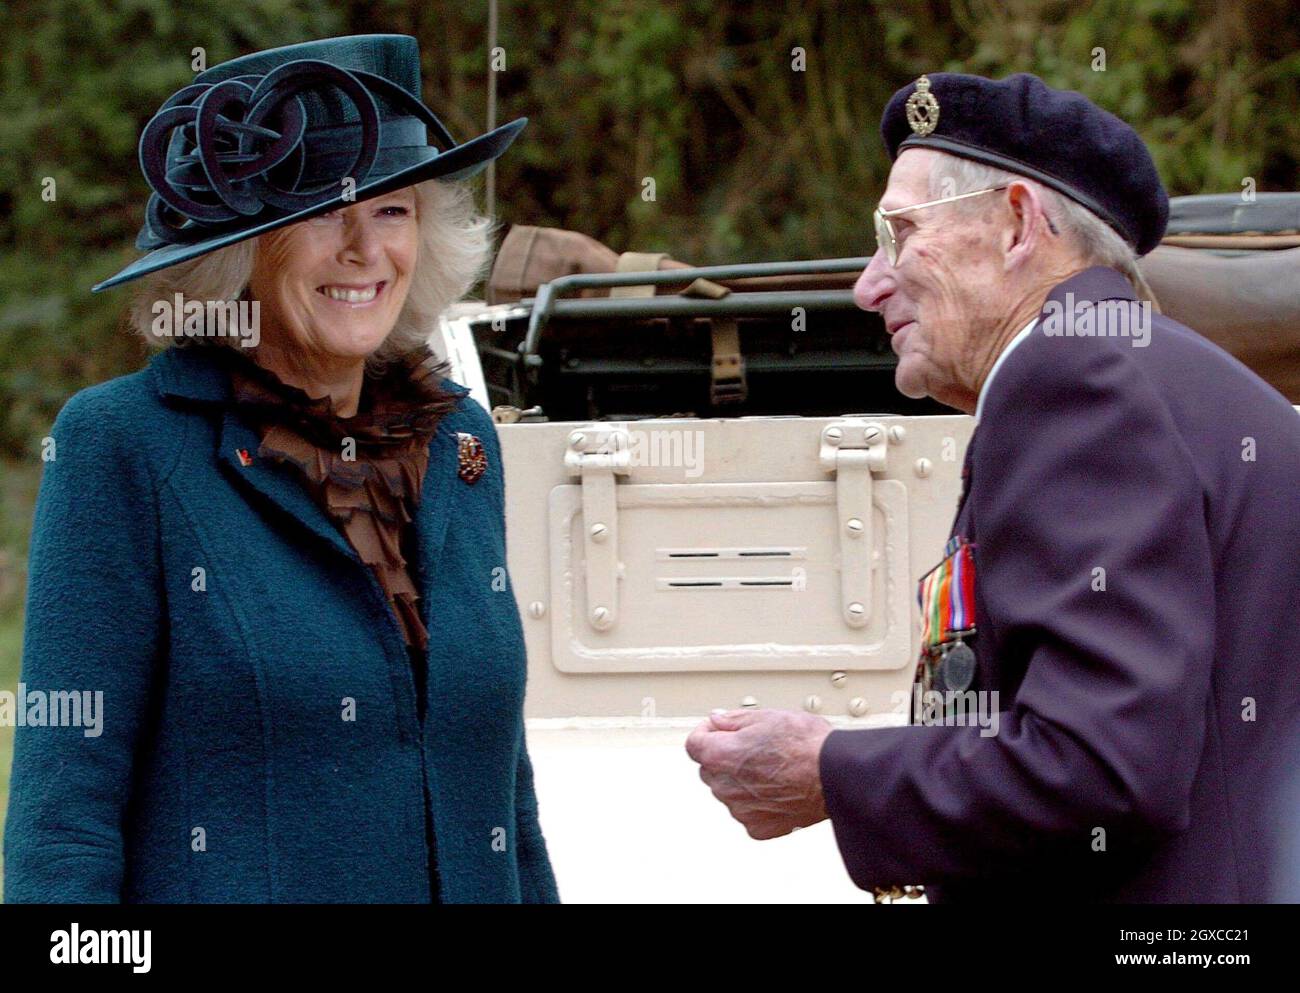 Camilla, Herzogin von Cornwall, Schirmherr der 7. Panzerdivision Memorial Association, trifft auf den Veteranen Robert Curran, 88, nach einem Gedenkgottesdienst im Thetford Forest zum Gedenken an den 65. Jahrestag des Starts der Schlacht von El Alamein in Ägypten. Der Vater der Herzogin, Major Bruce Shand, kämpfte in der Schlacht von El Alamein. Stockfoto